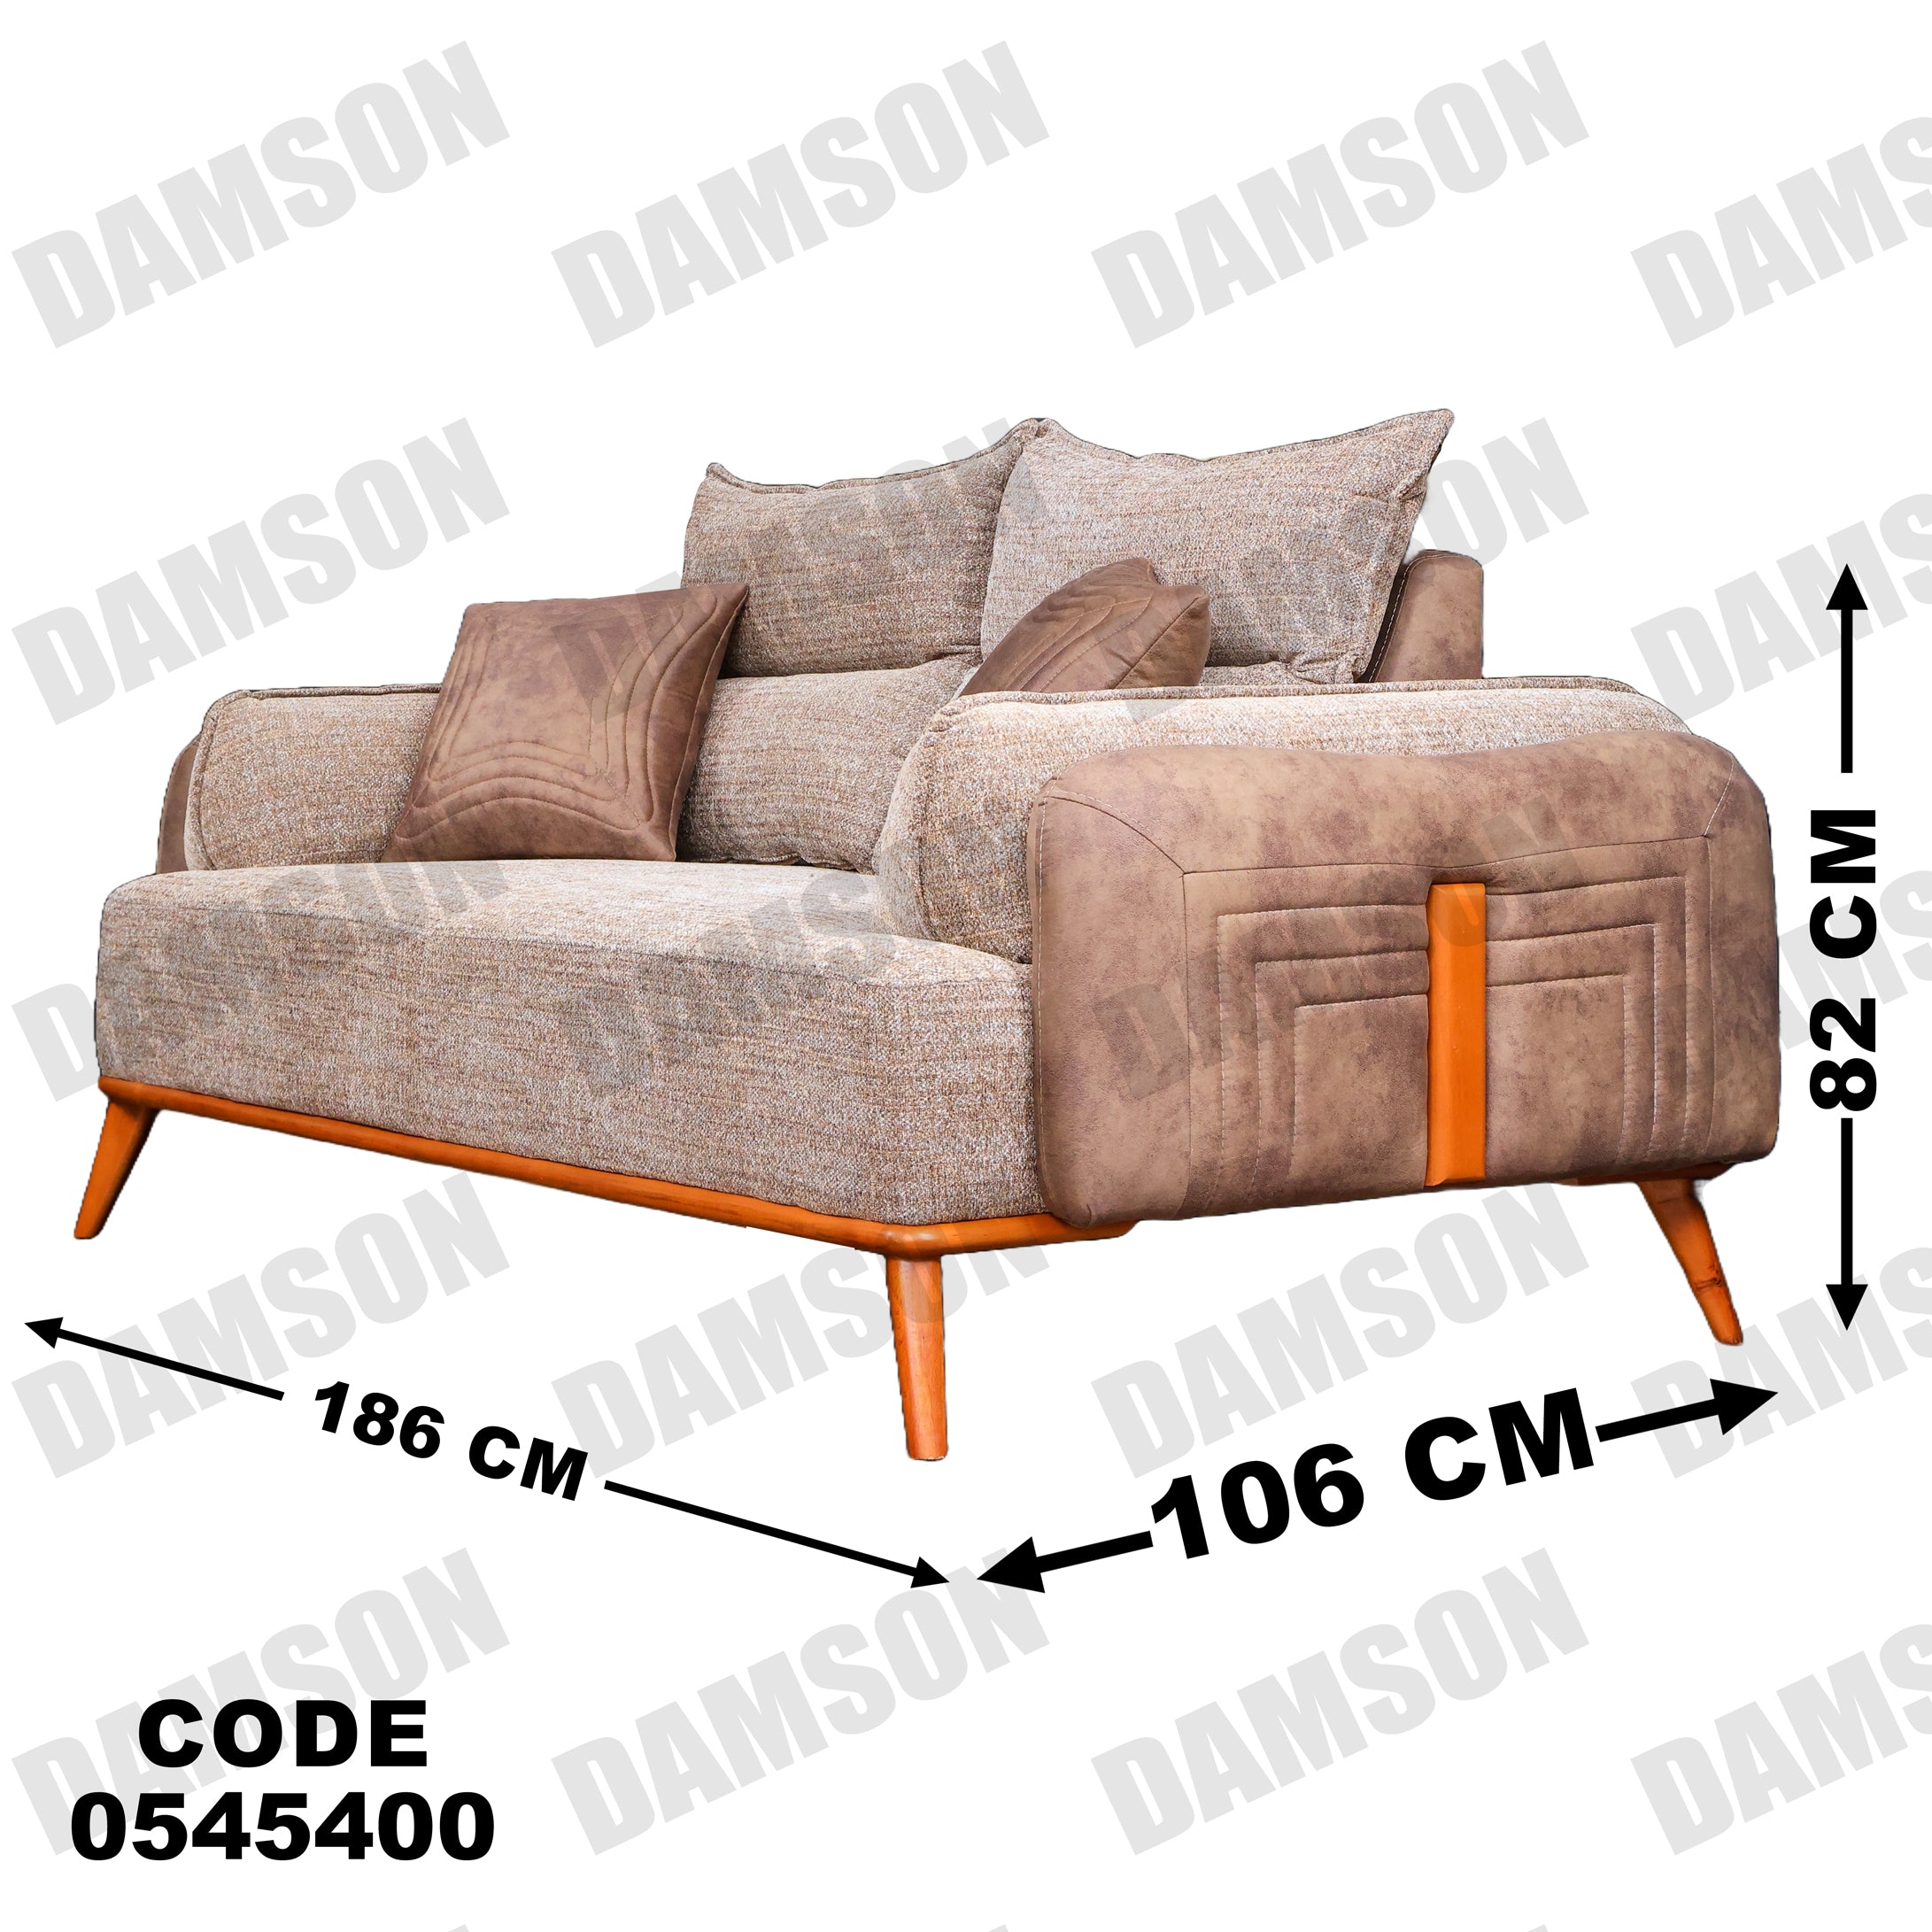 انترية 454 - Damson Furnitureانترية 454